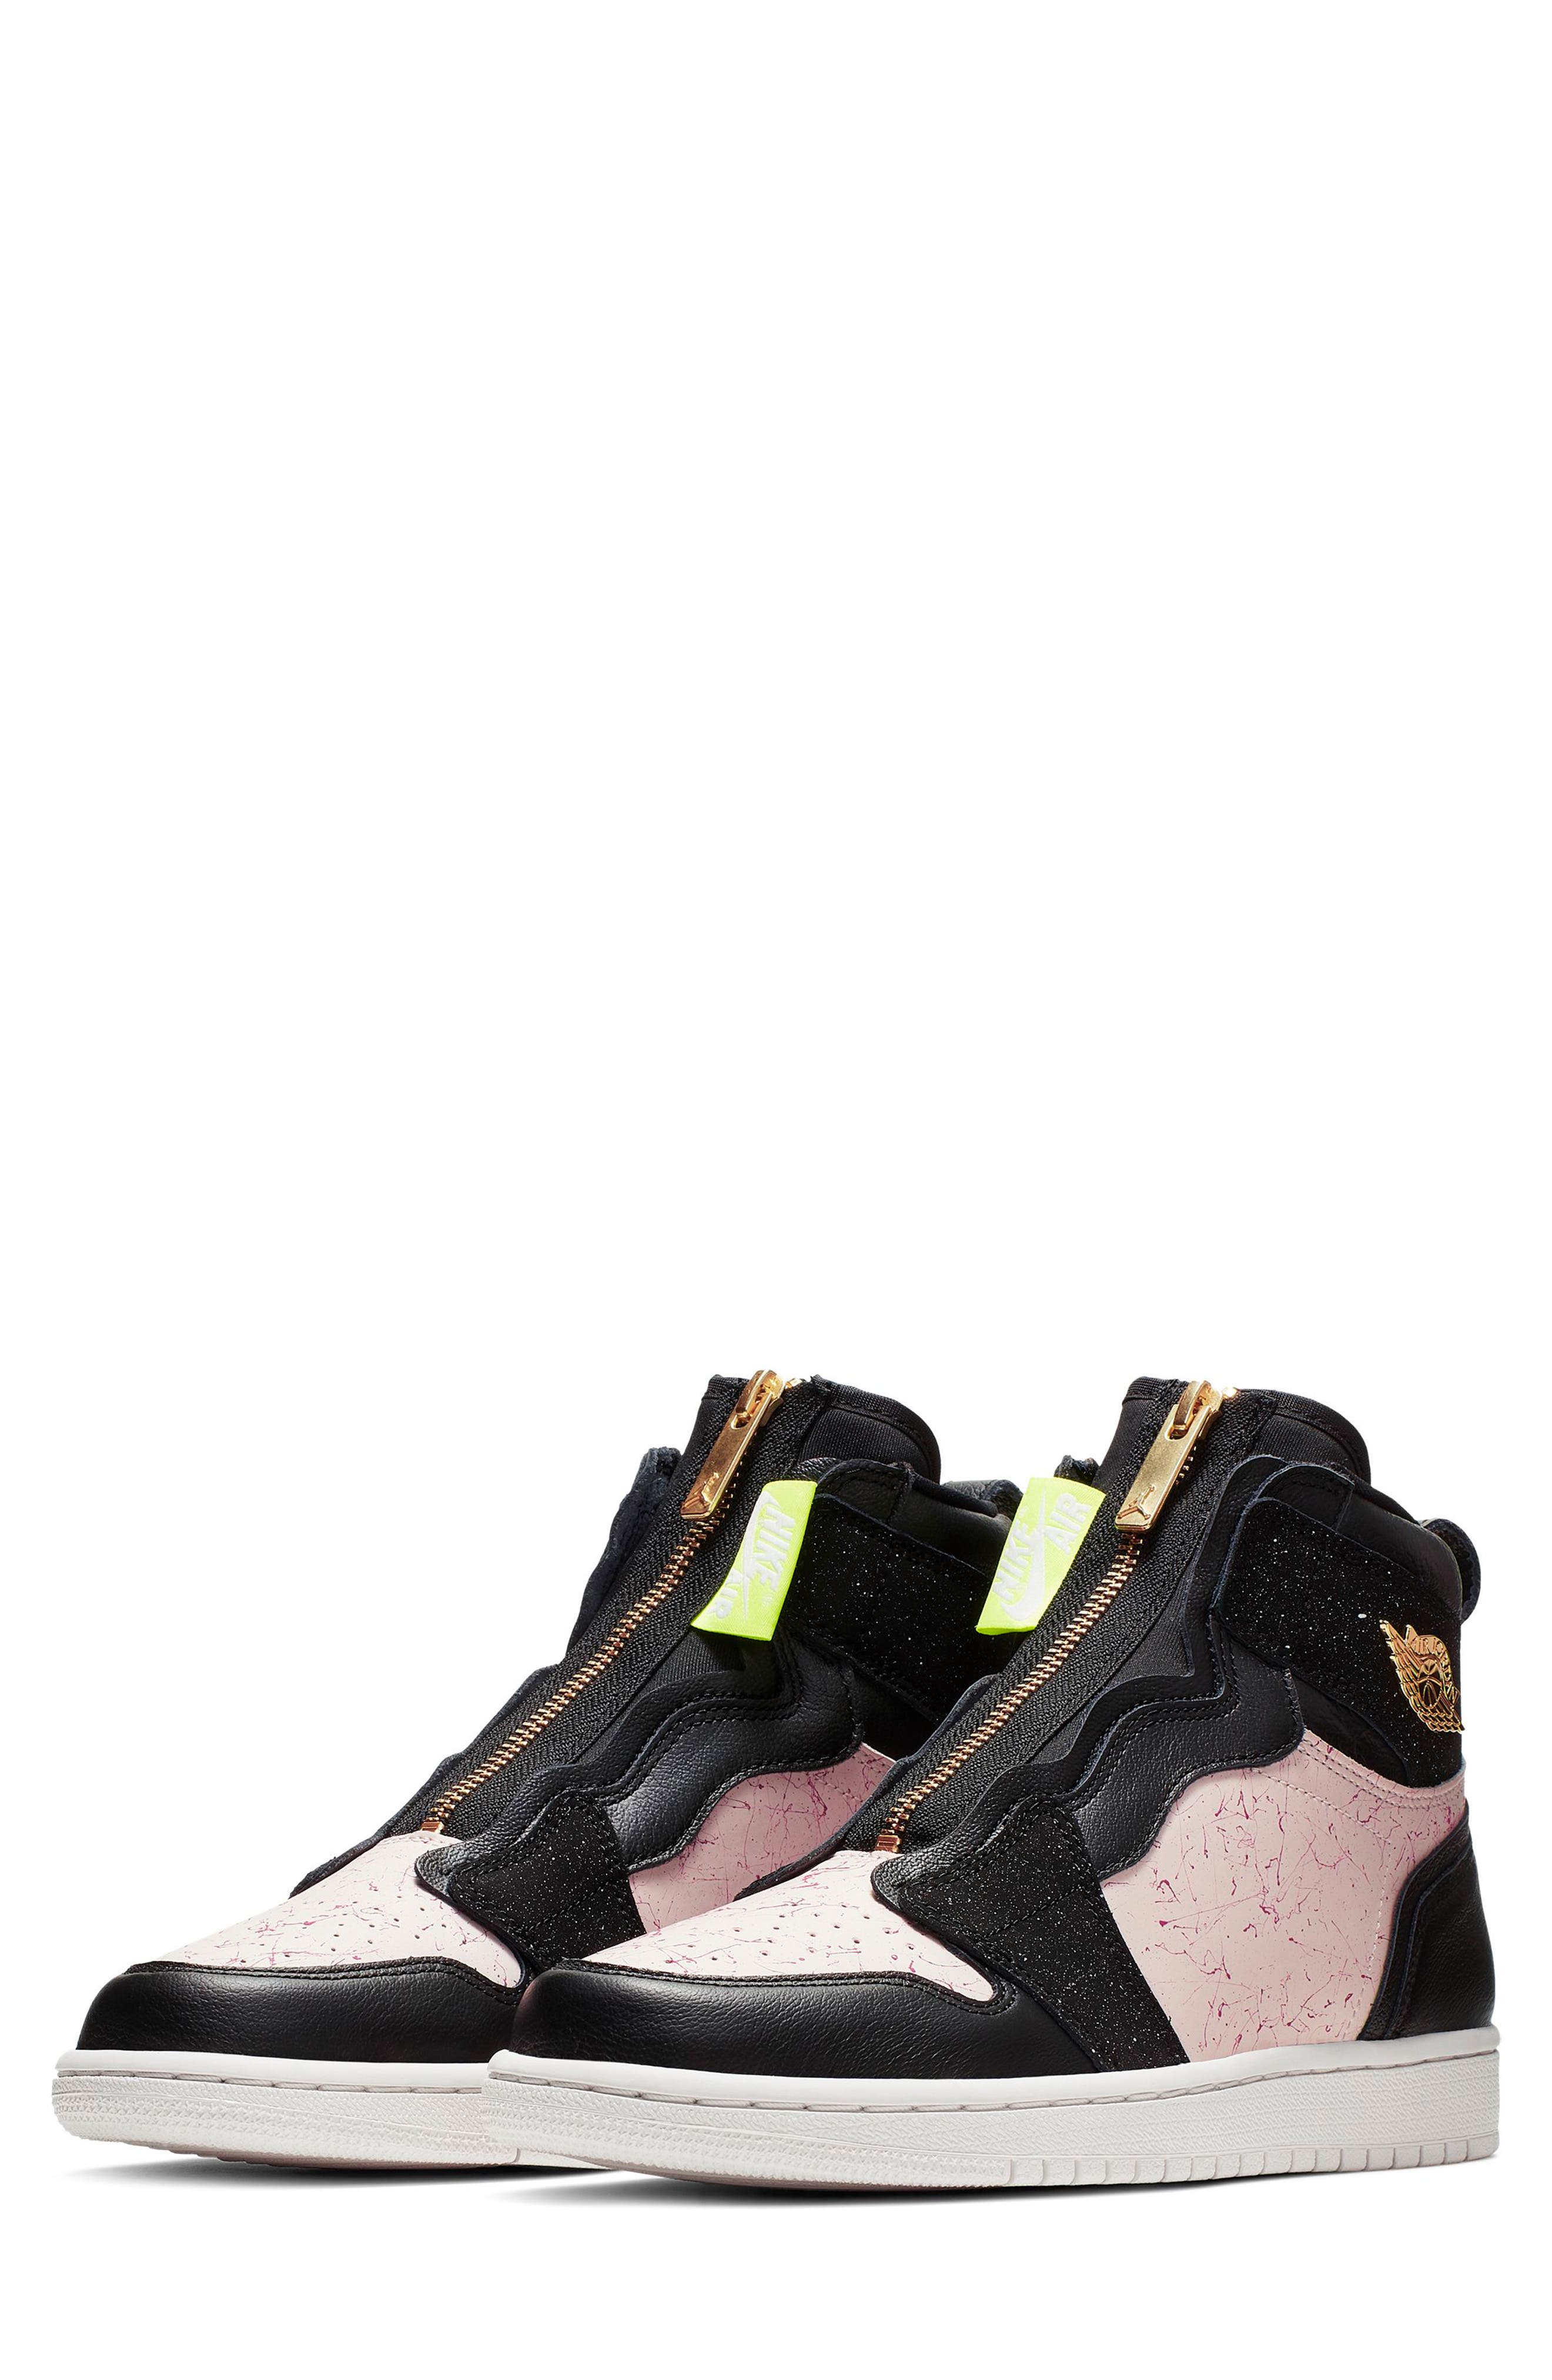 Nike Air Jordan 1 Zip High Top Sneakers 